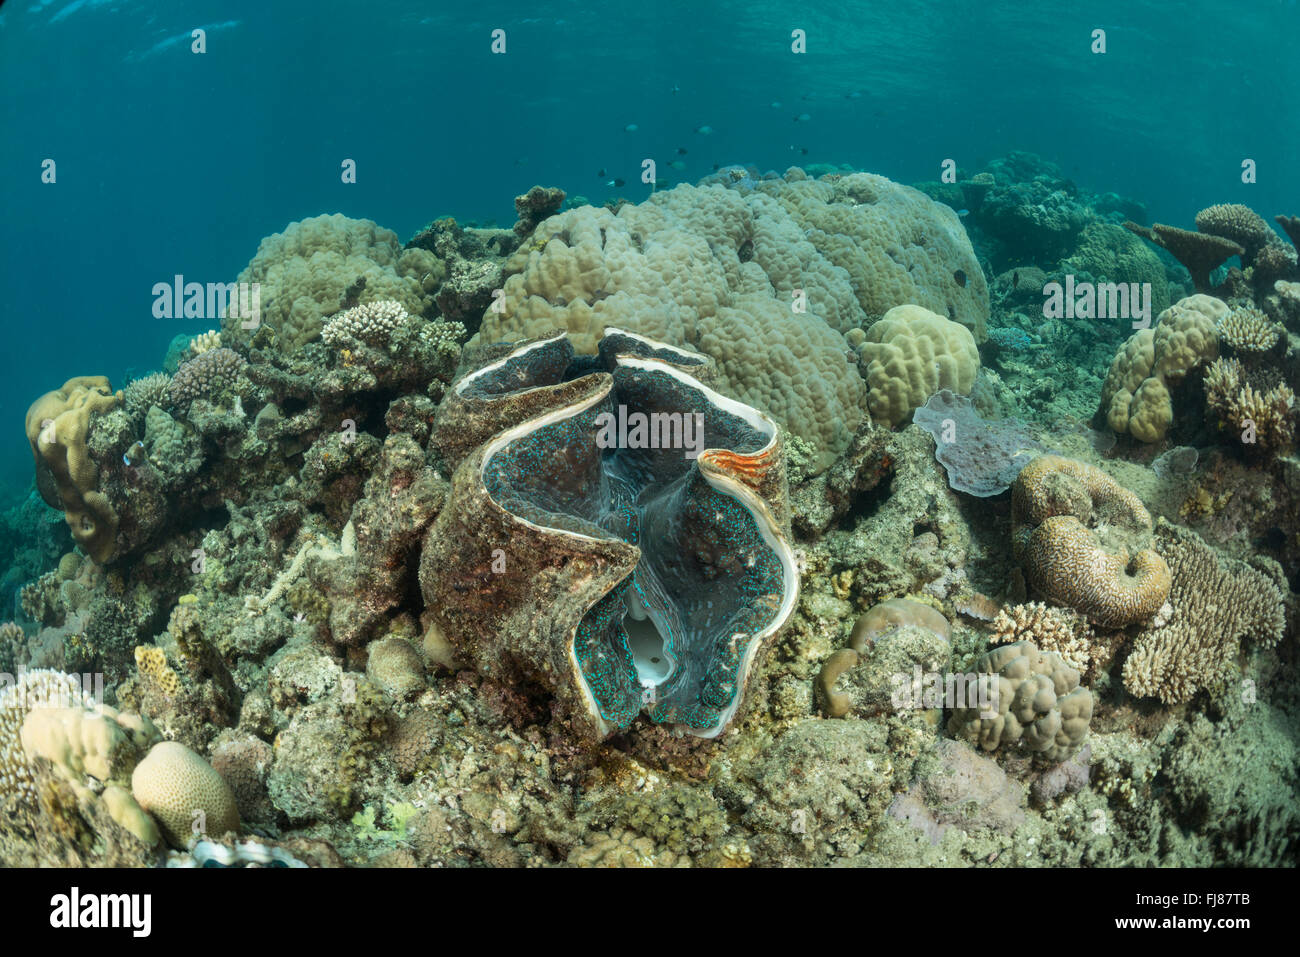 Riesenmuschel im Korallenriff. In der Mündung Riffe gab es sehr viele große gesunde Riesenmuscheln. Porites Korallen Kopf bietet Platz für ein gesundes Riff-Lebensraum. Stockfoto